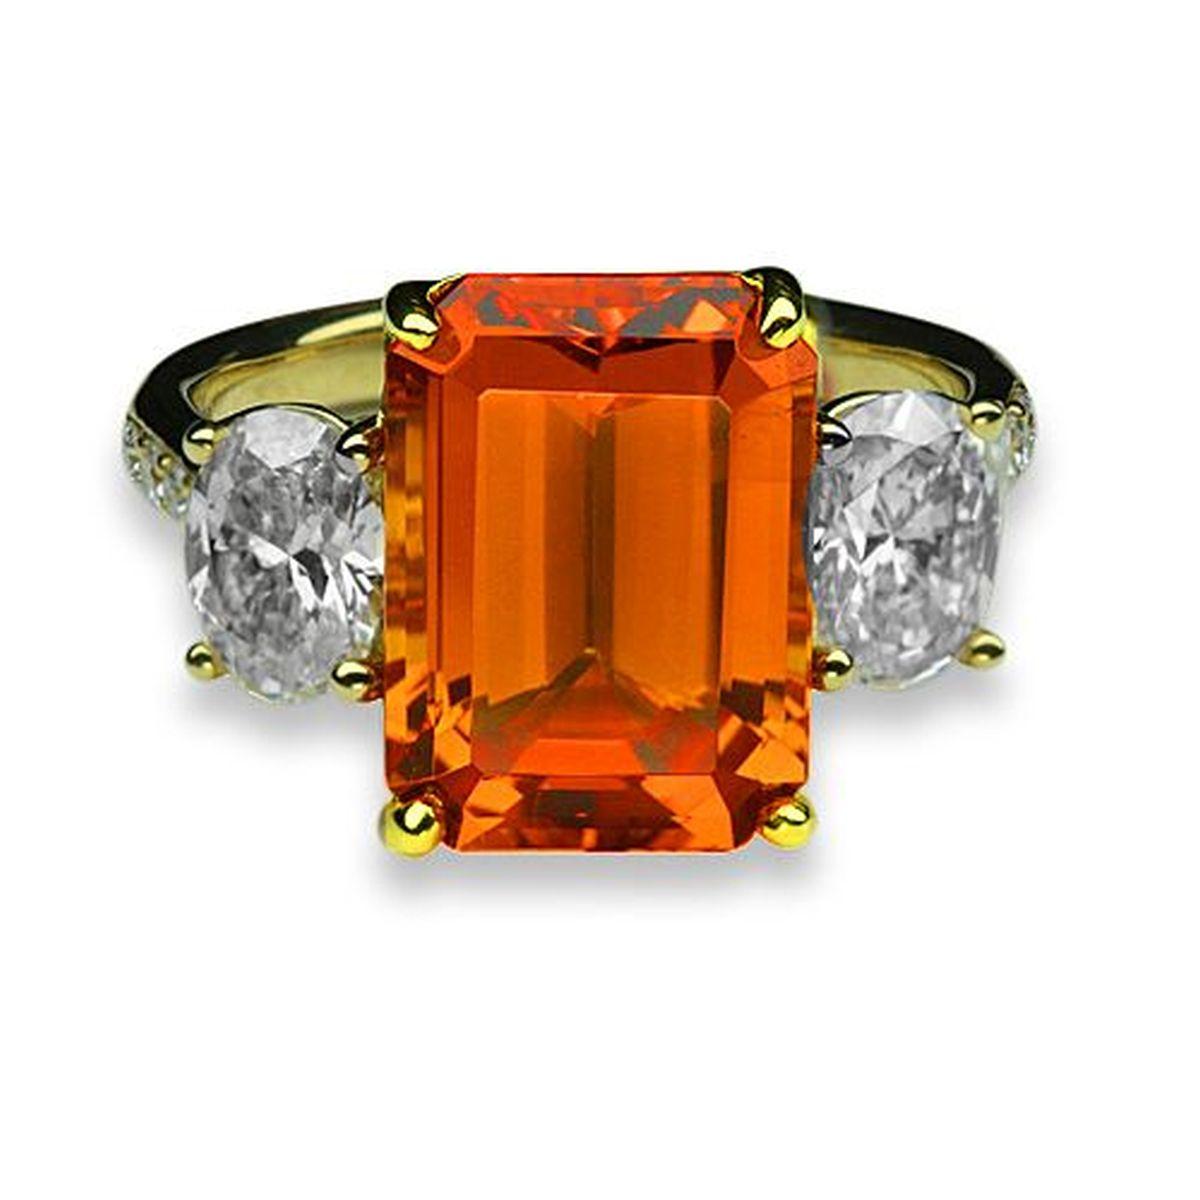 Tout simplement magnifique ! Bague en or à 3 pierres de style Art déco Revival finement détaillée. Au centre se trouve un grenat mandarin orange vif, VS, de taille émeraude, serti à la main et pesant environ 6,64 carats, avec un diamant D-VS de